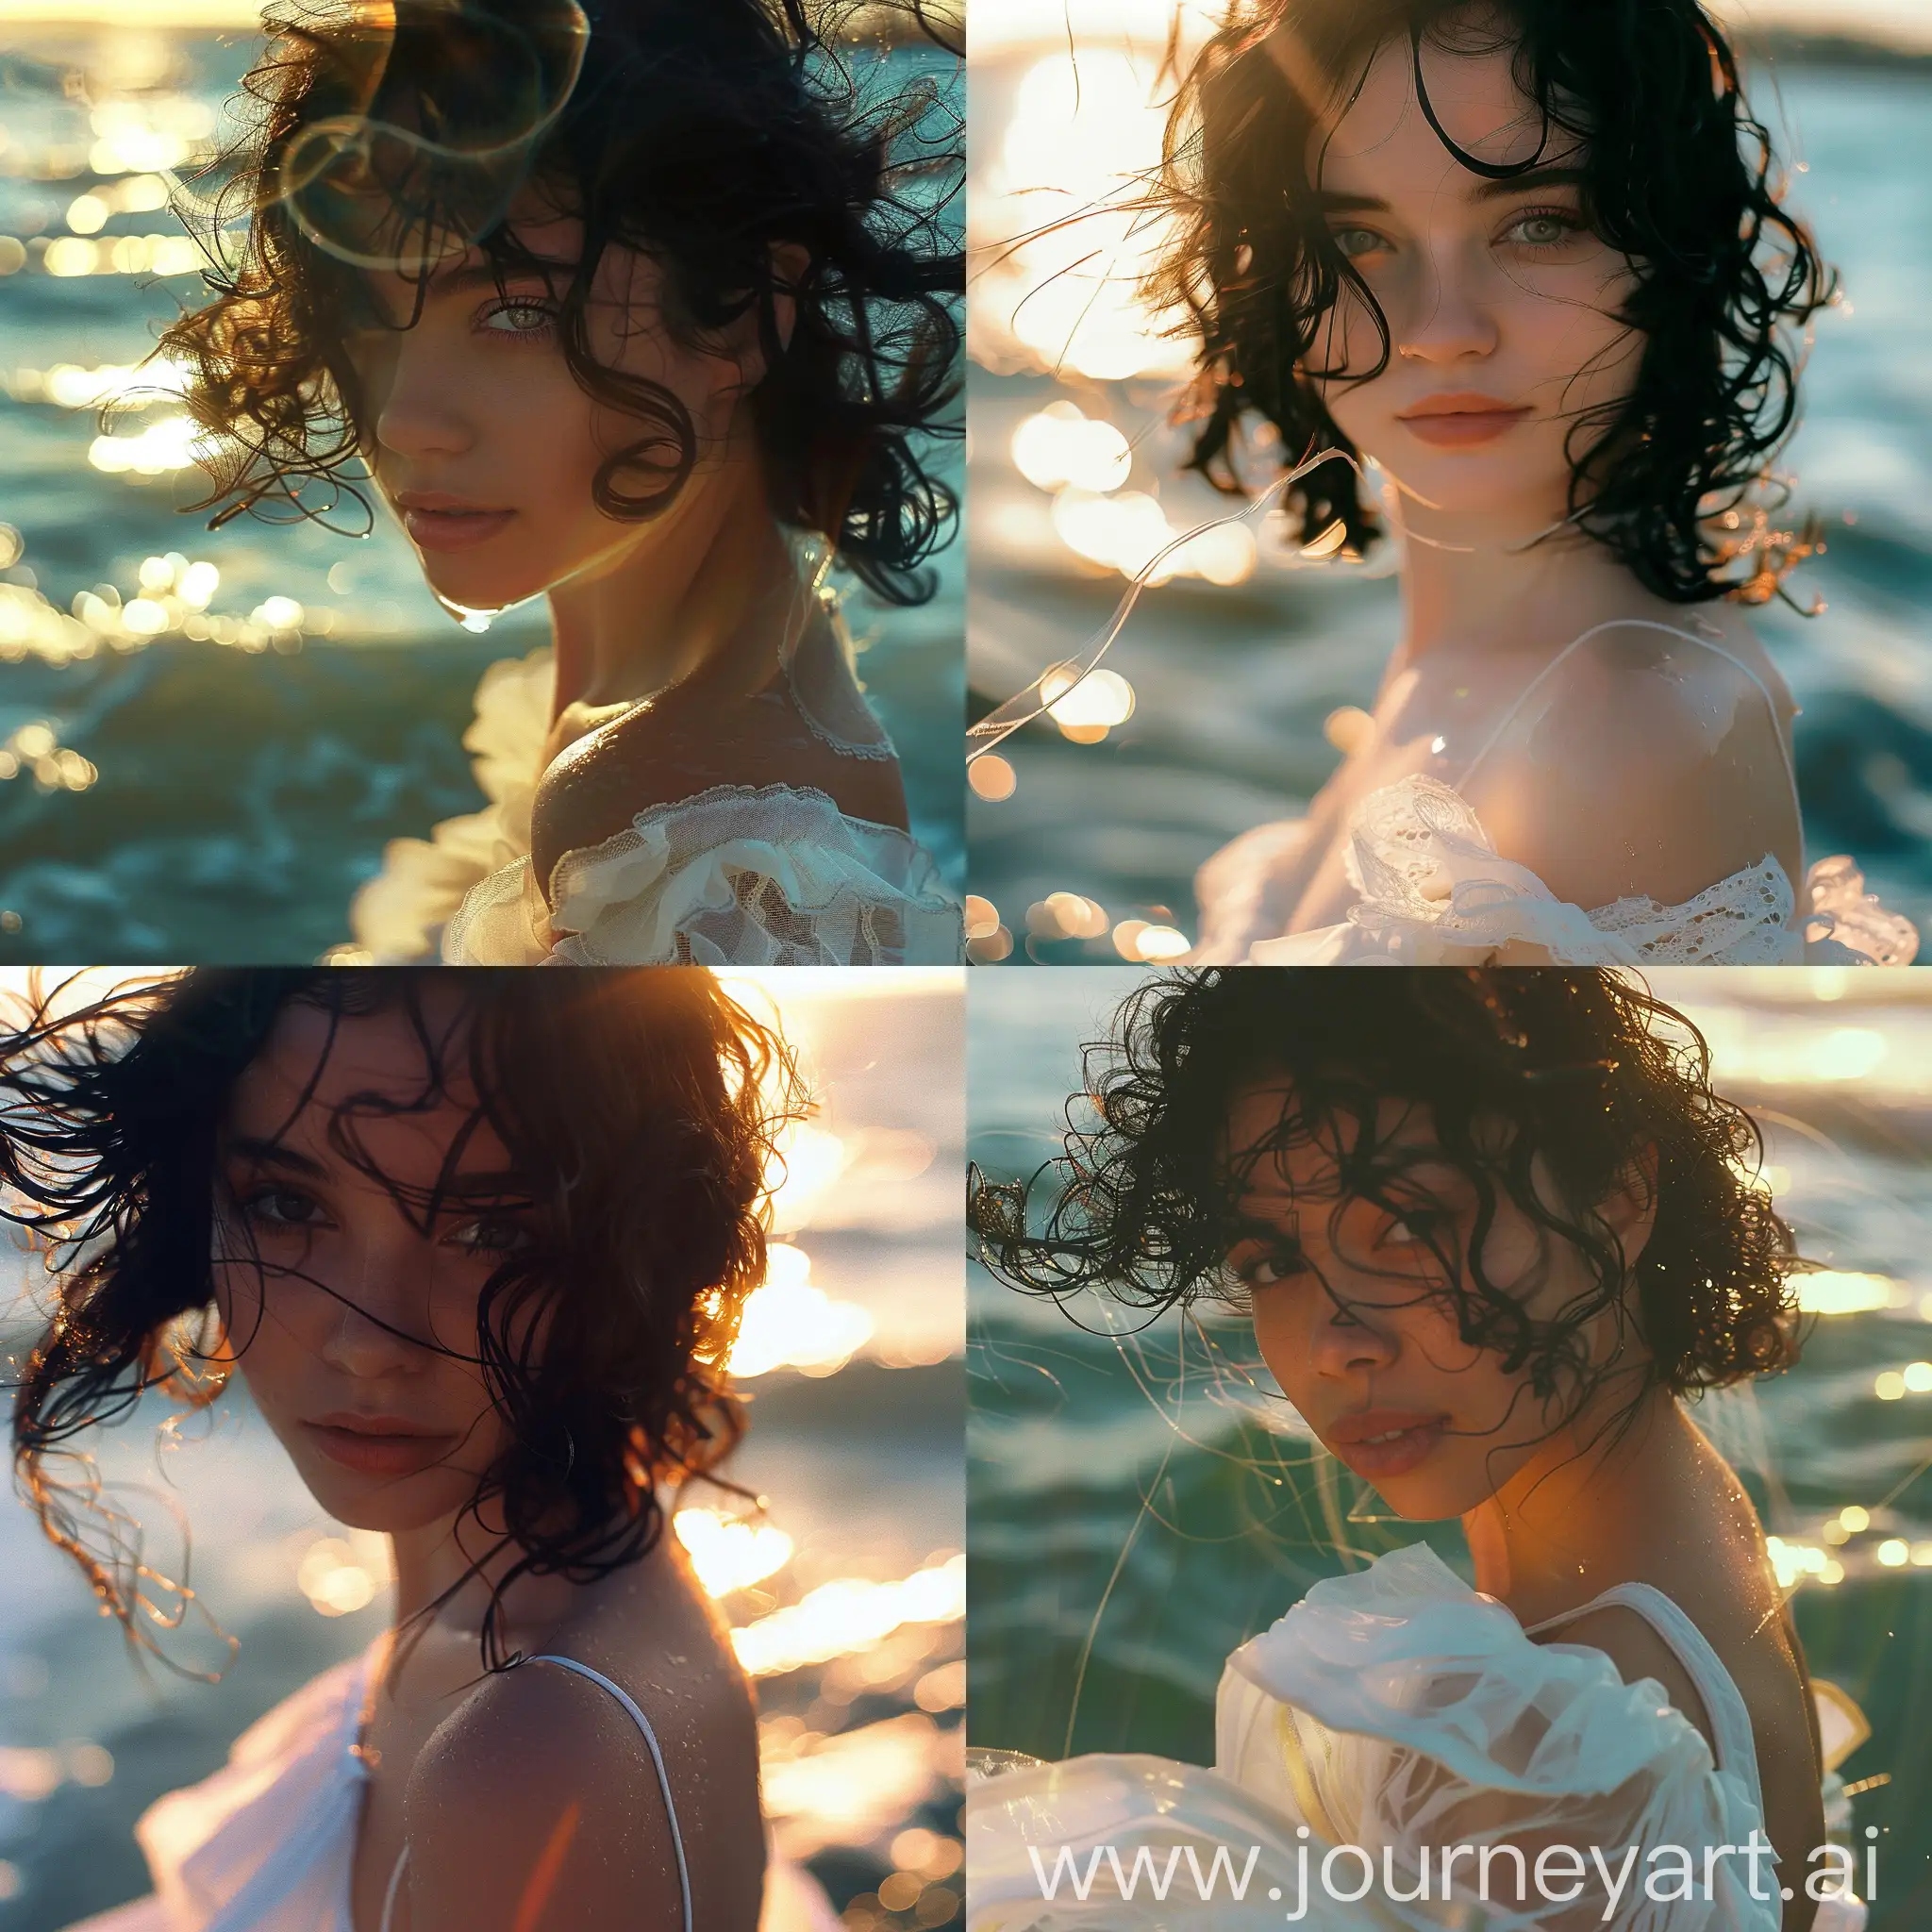  Retrato de una señorita de 18 años, primer plano, luz de fondo, puesta de sol, ondas de agua, vestido blanco, viento, reflejo de agua en la cara, cabello negro con churos, colores de película, luz solar